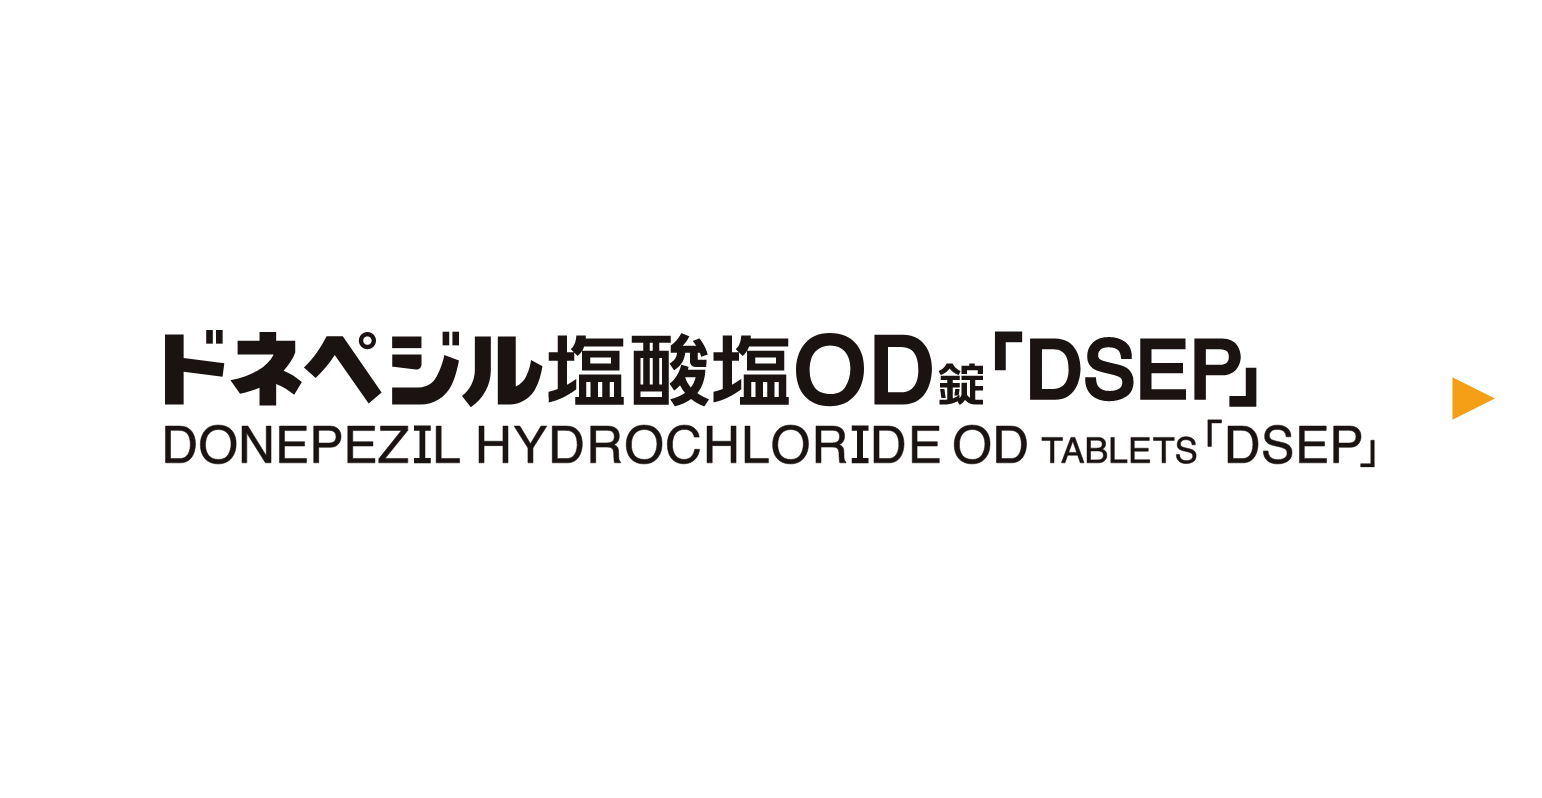  ドネペジル塩酸塩OD錠「DSEP」